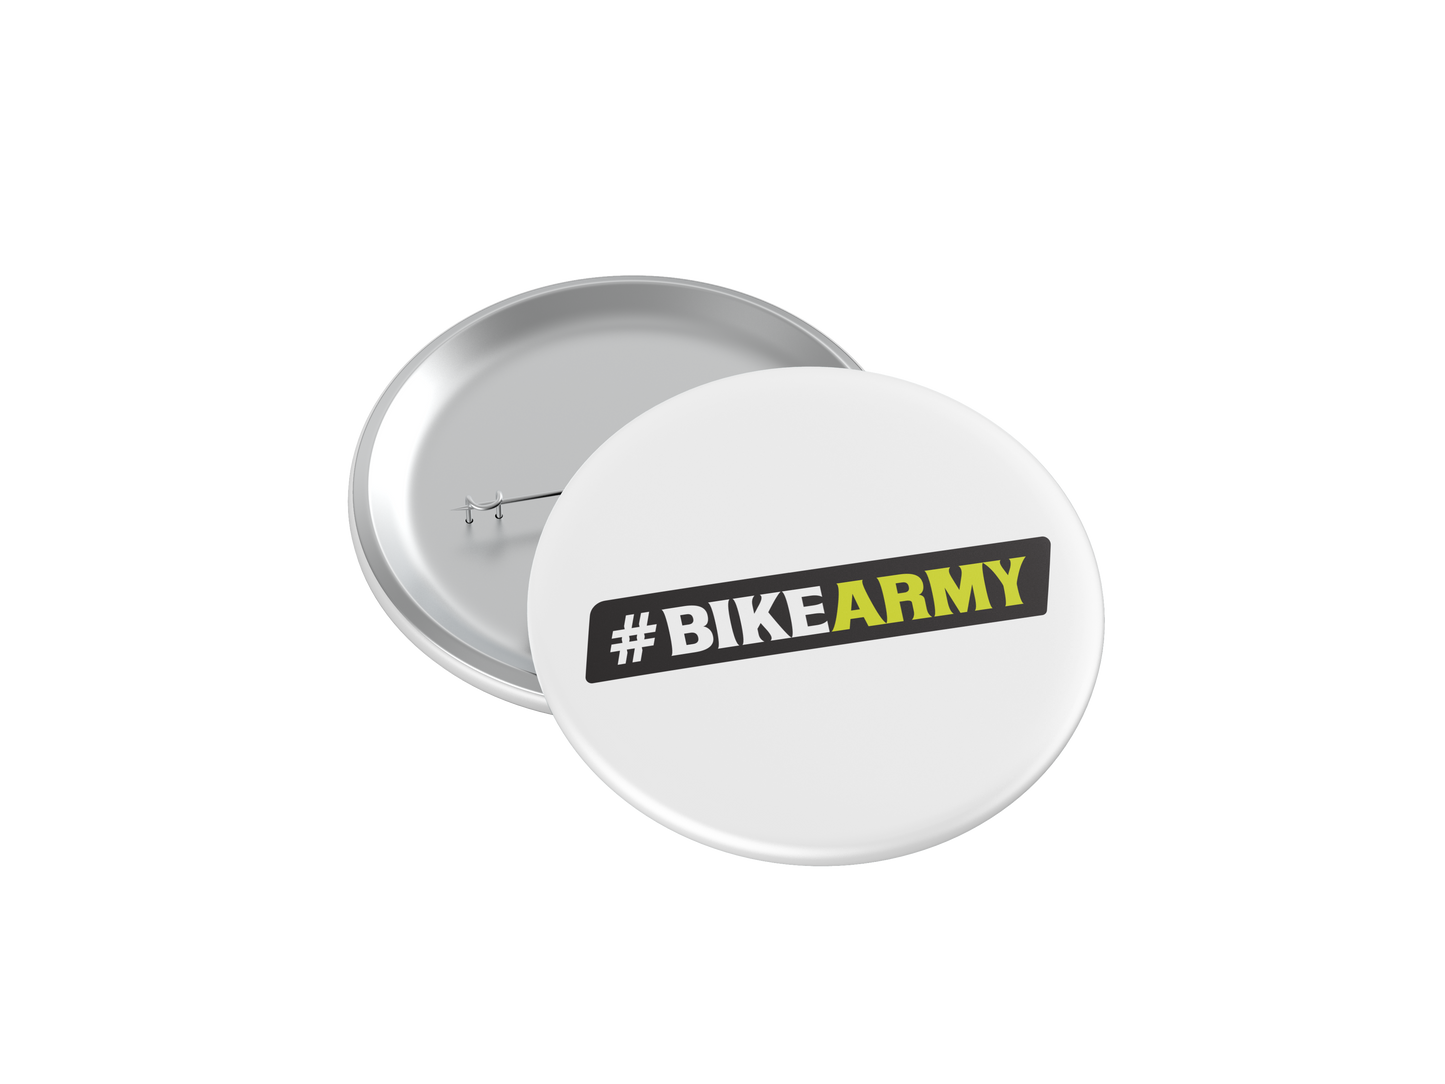 Bike Army